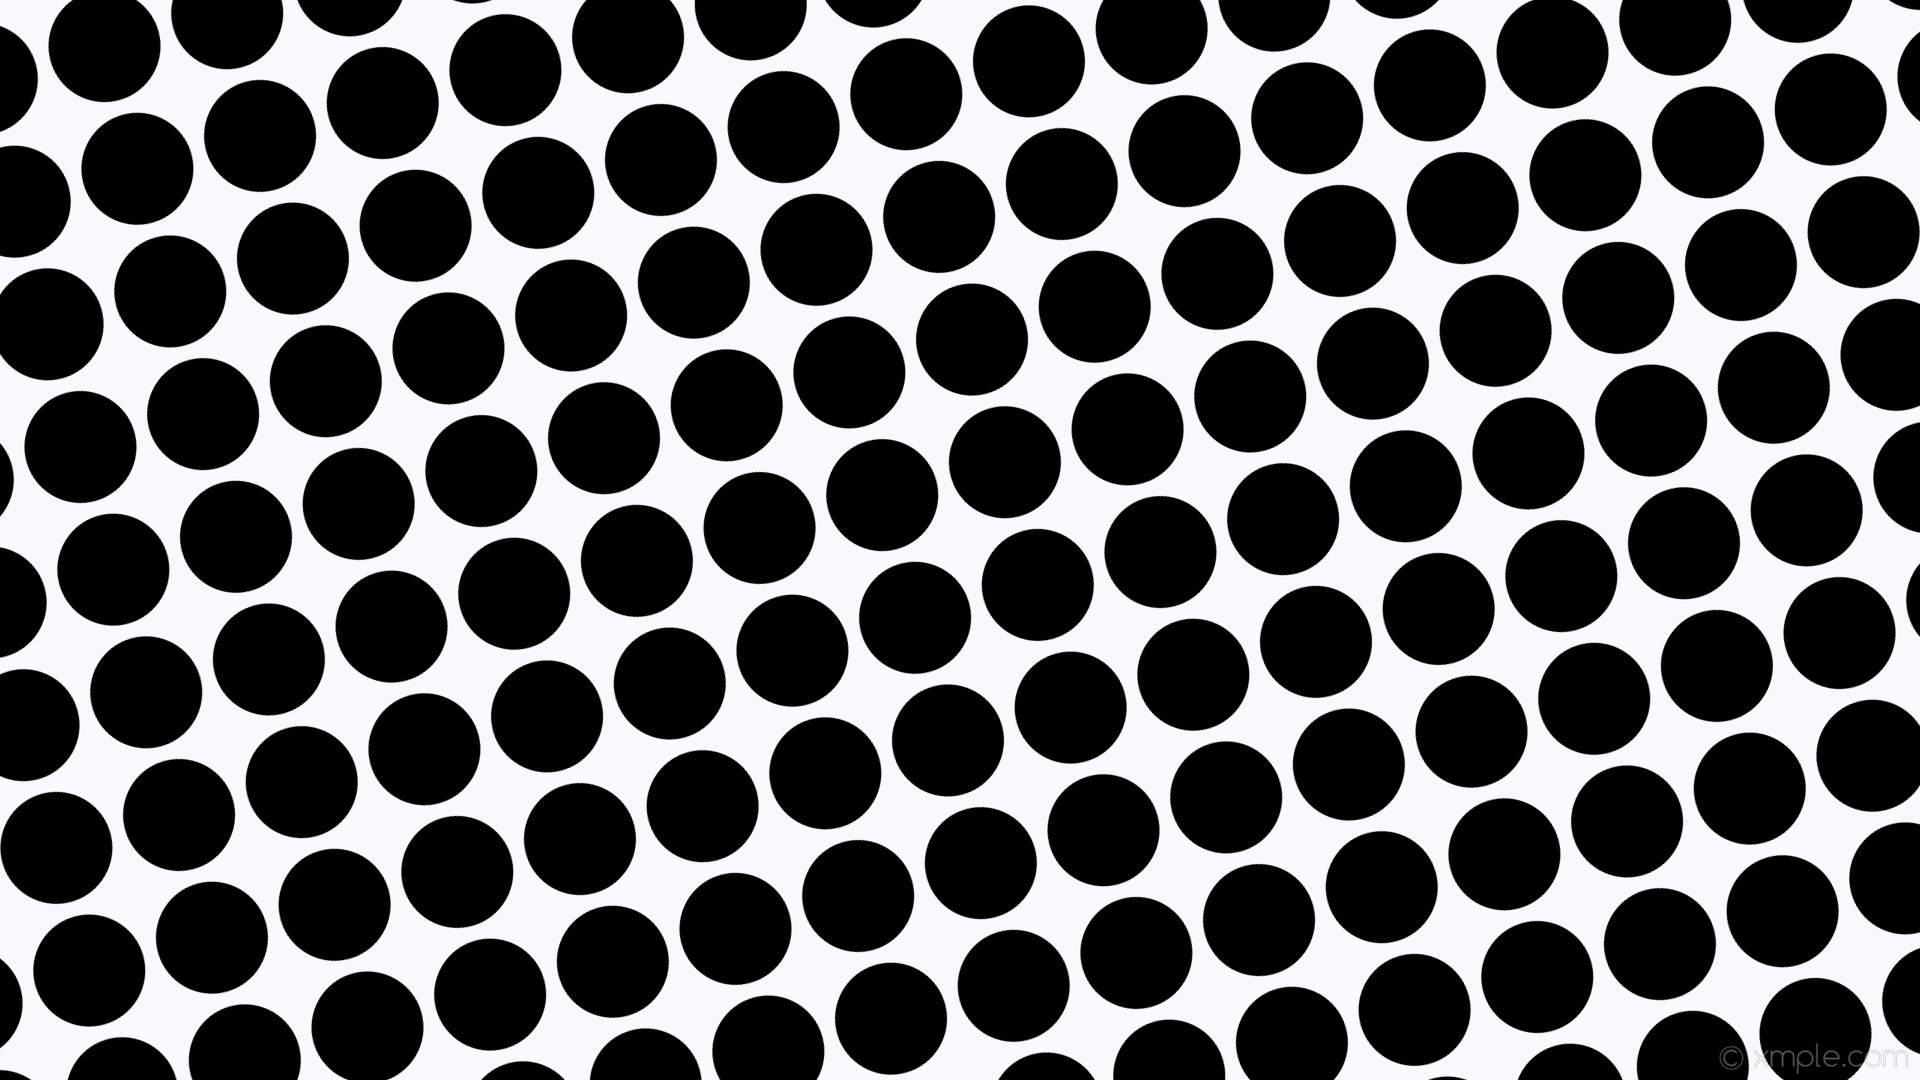 1920x1080 wallpaper dots polka black spots white ghost white #f8f8ff #000000 195Â°  112px 127px